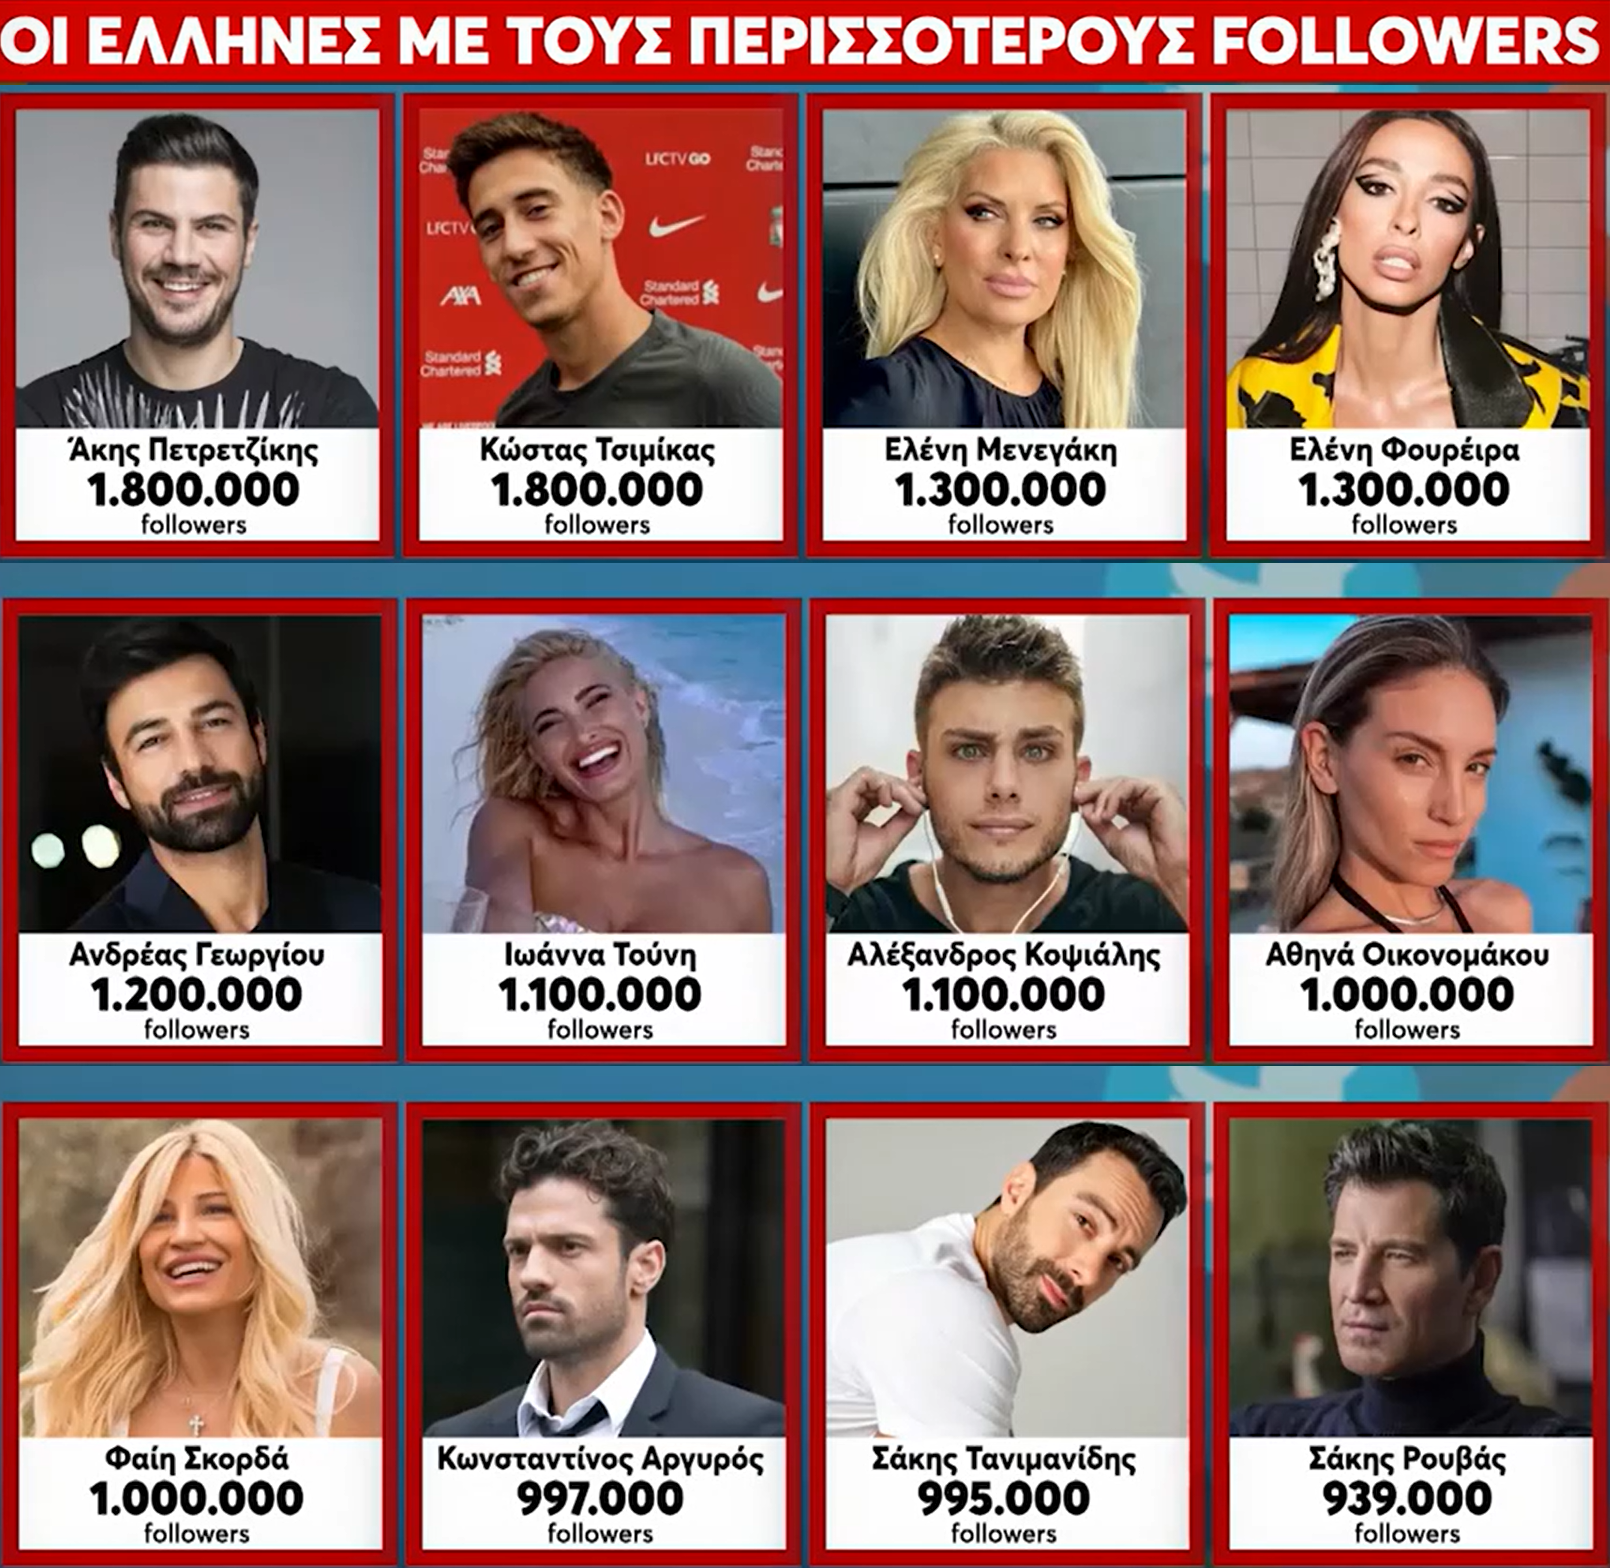 Οι «φτηνοί» και οι καλοπληρωμένοι: Tόσες χιλιάδες ευρώ κερδίζουν οι Έλληνες celebrities ανά post στο instagram - Αναλυτικά τα ποσά